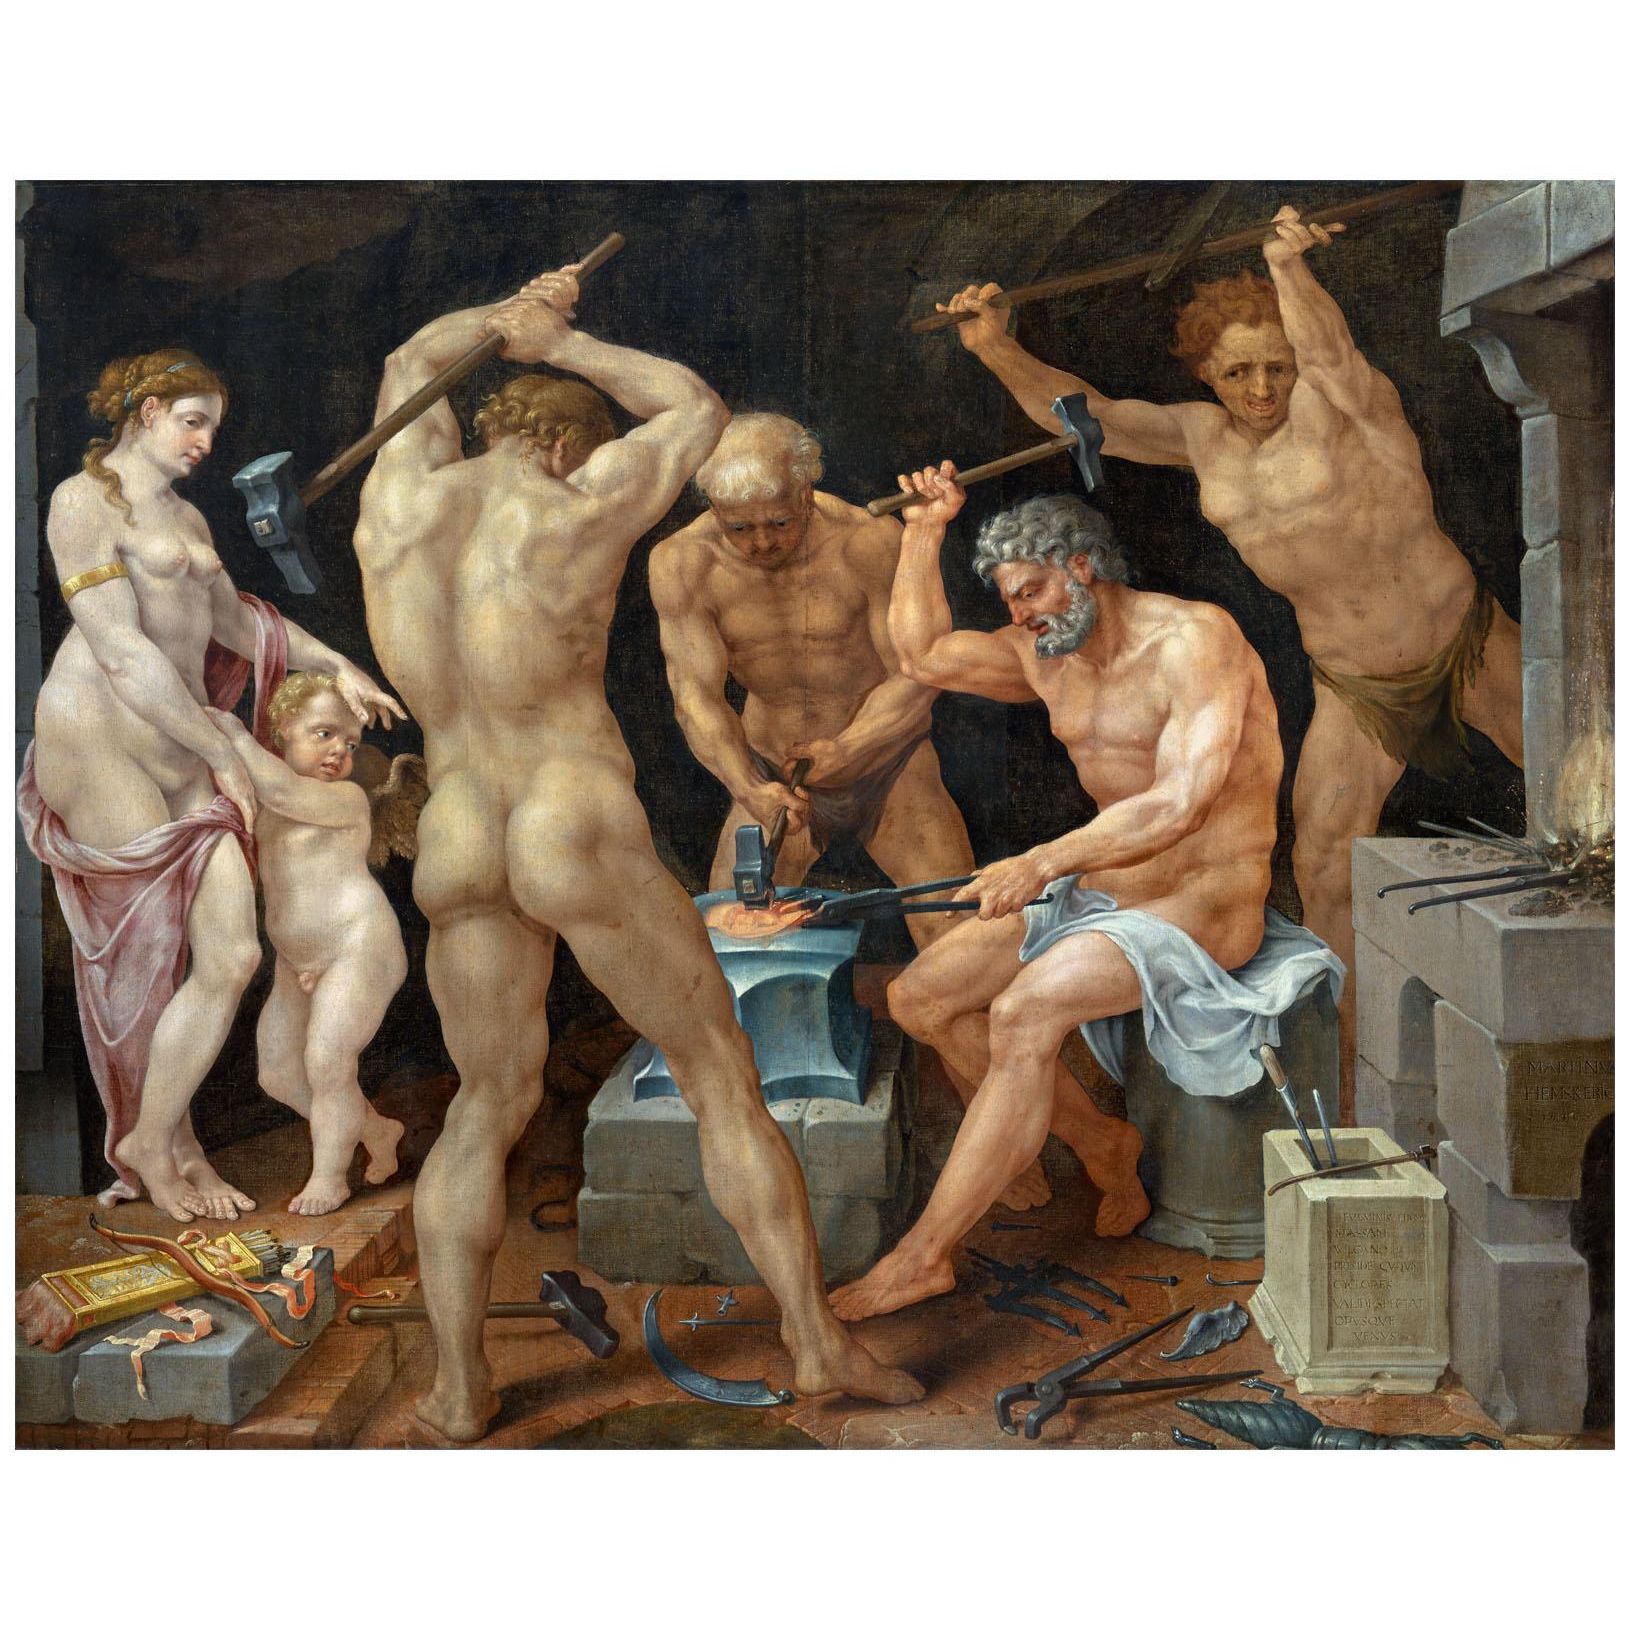 Maarten van Heemskerck. Venus and Cupido in Vulcan's workshop. 1536. NG Prague